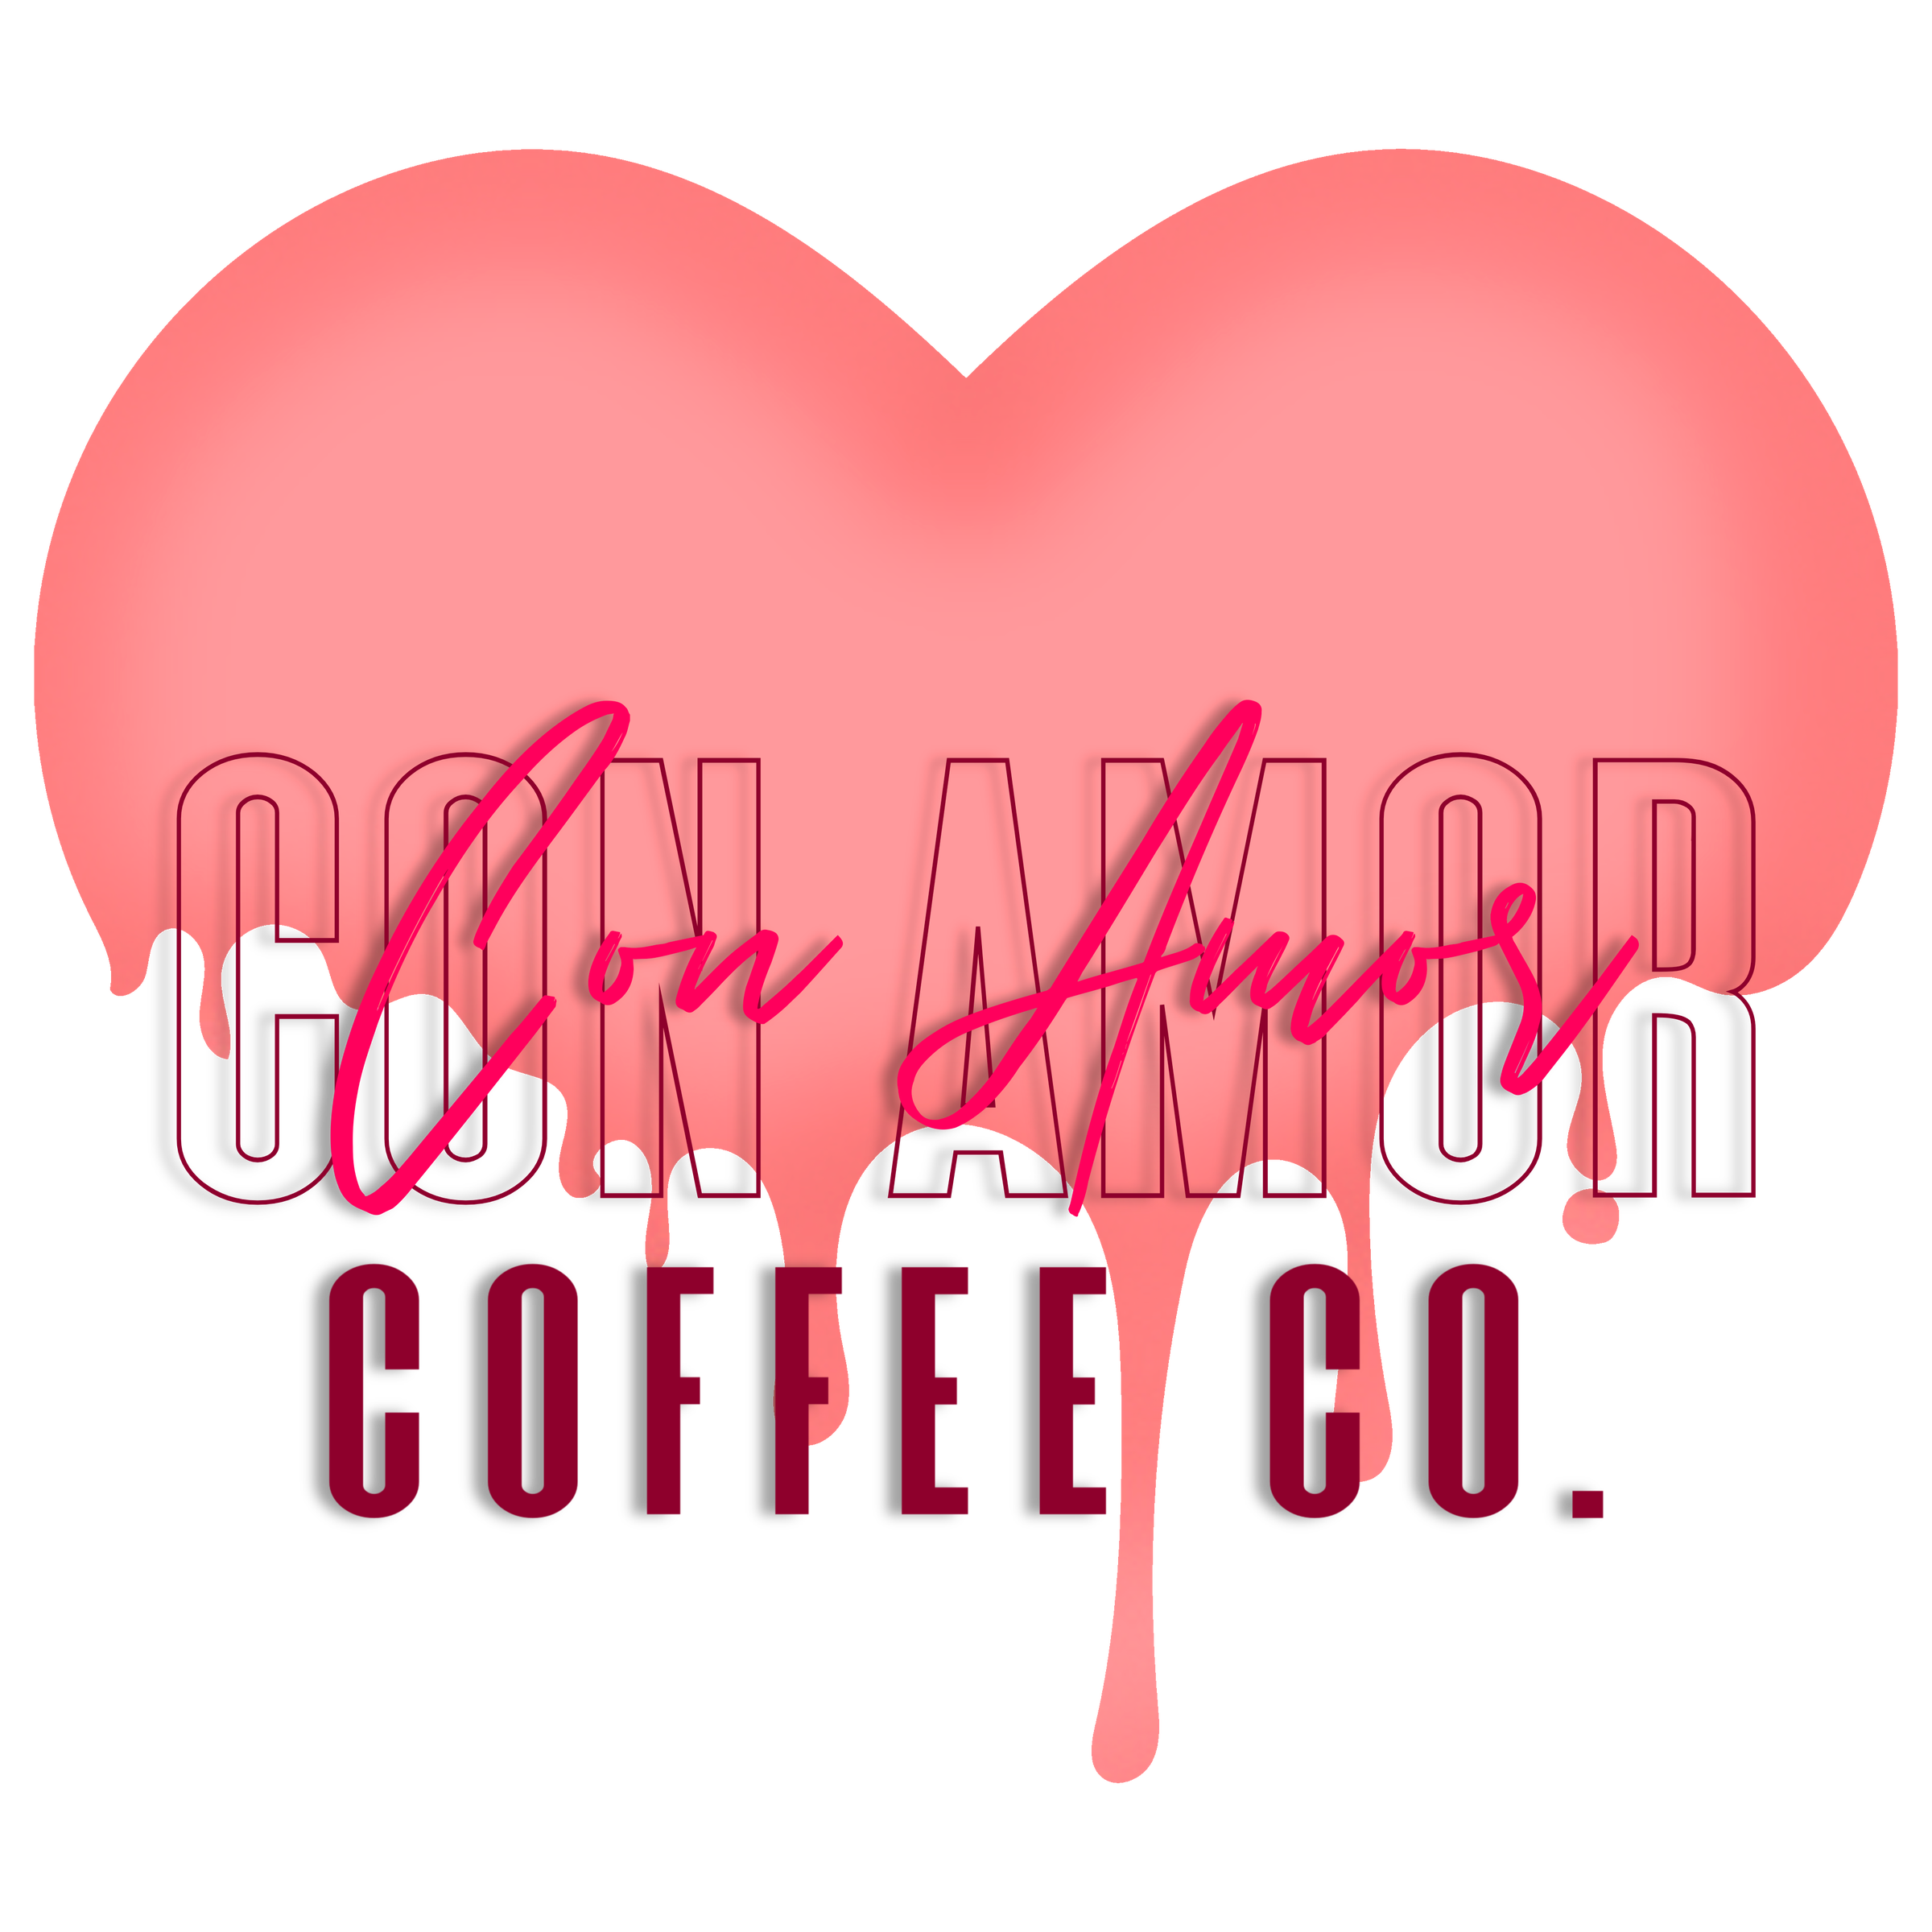 Cafe de Olla  Con Amor Coffee Co.